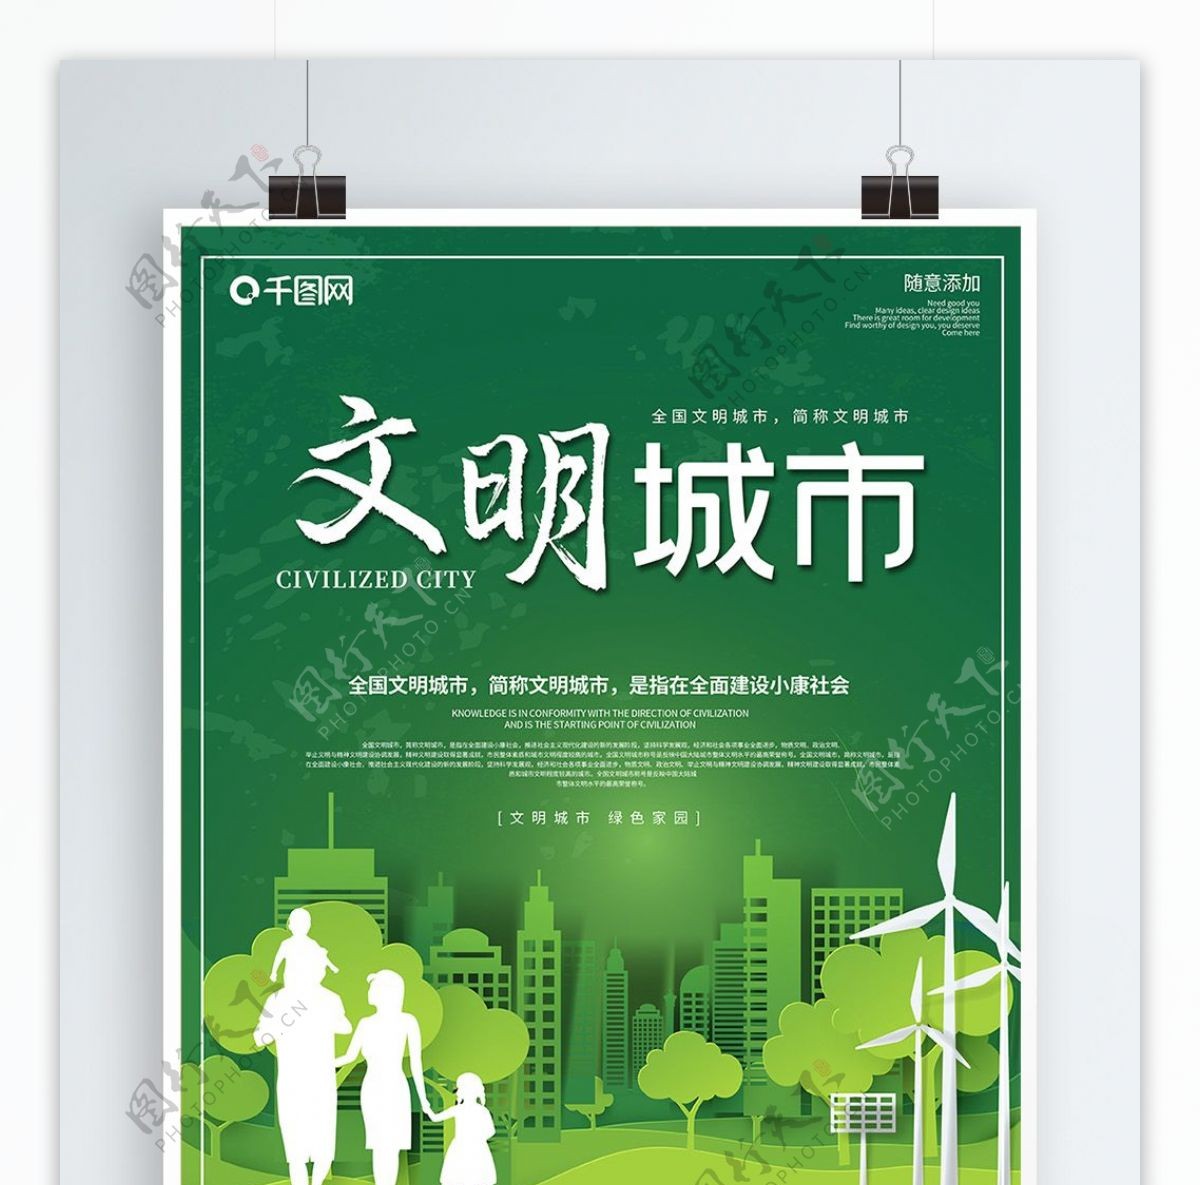 清新绿色卫生城市文明城市公益海报